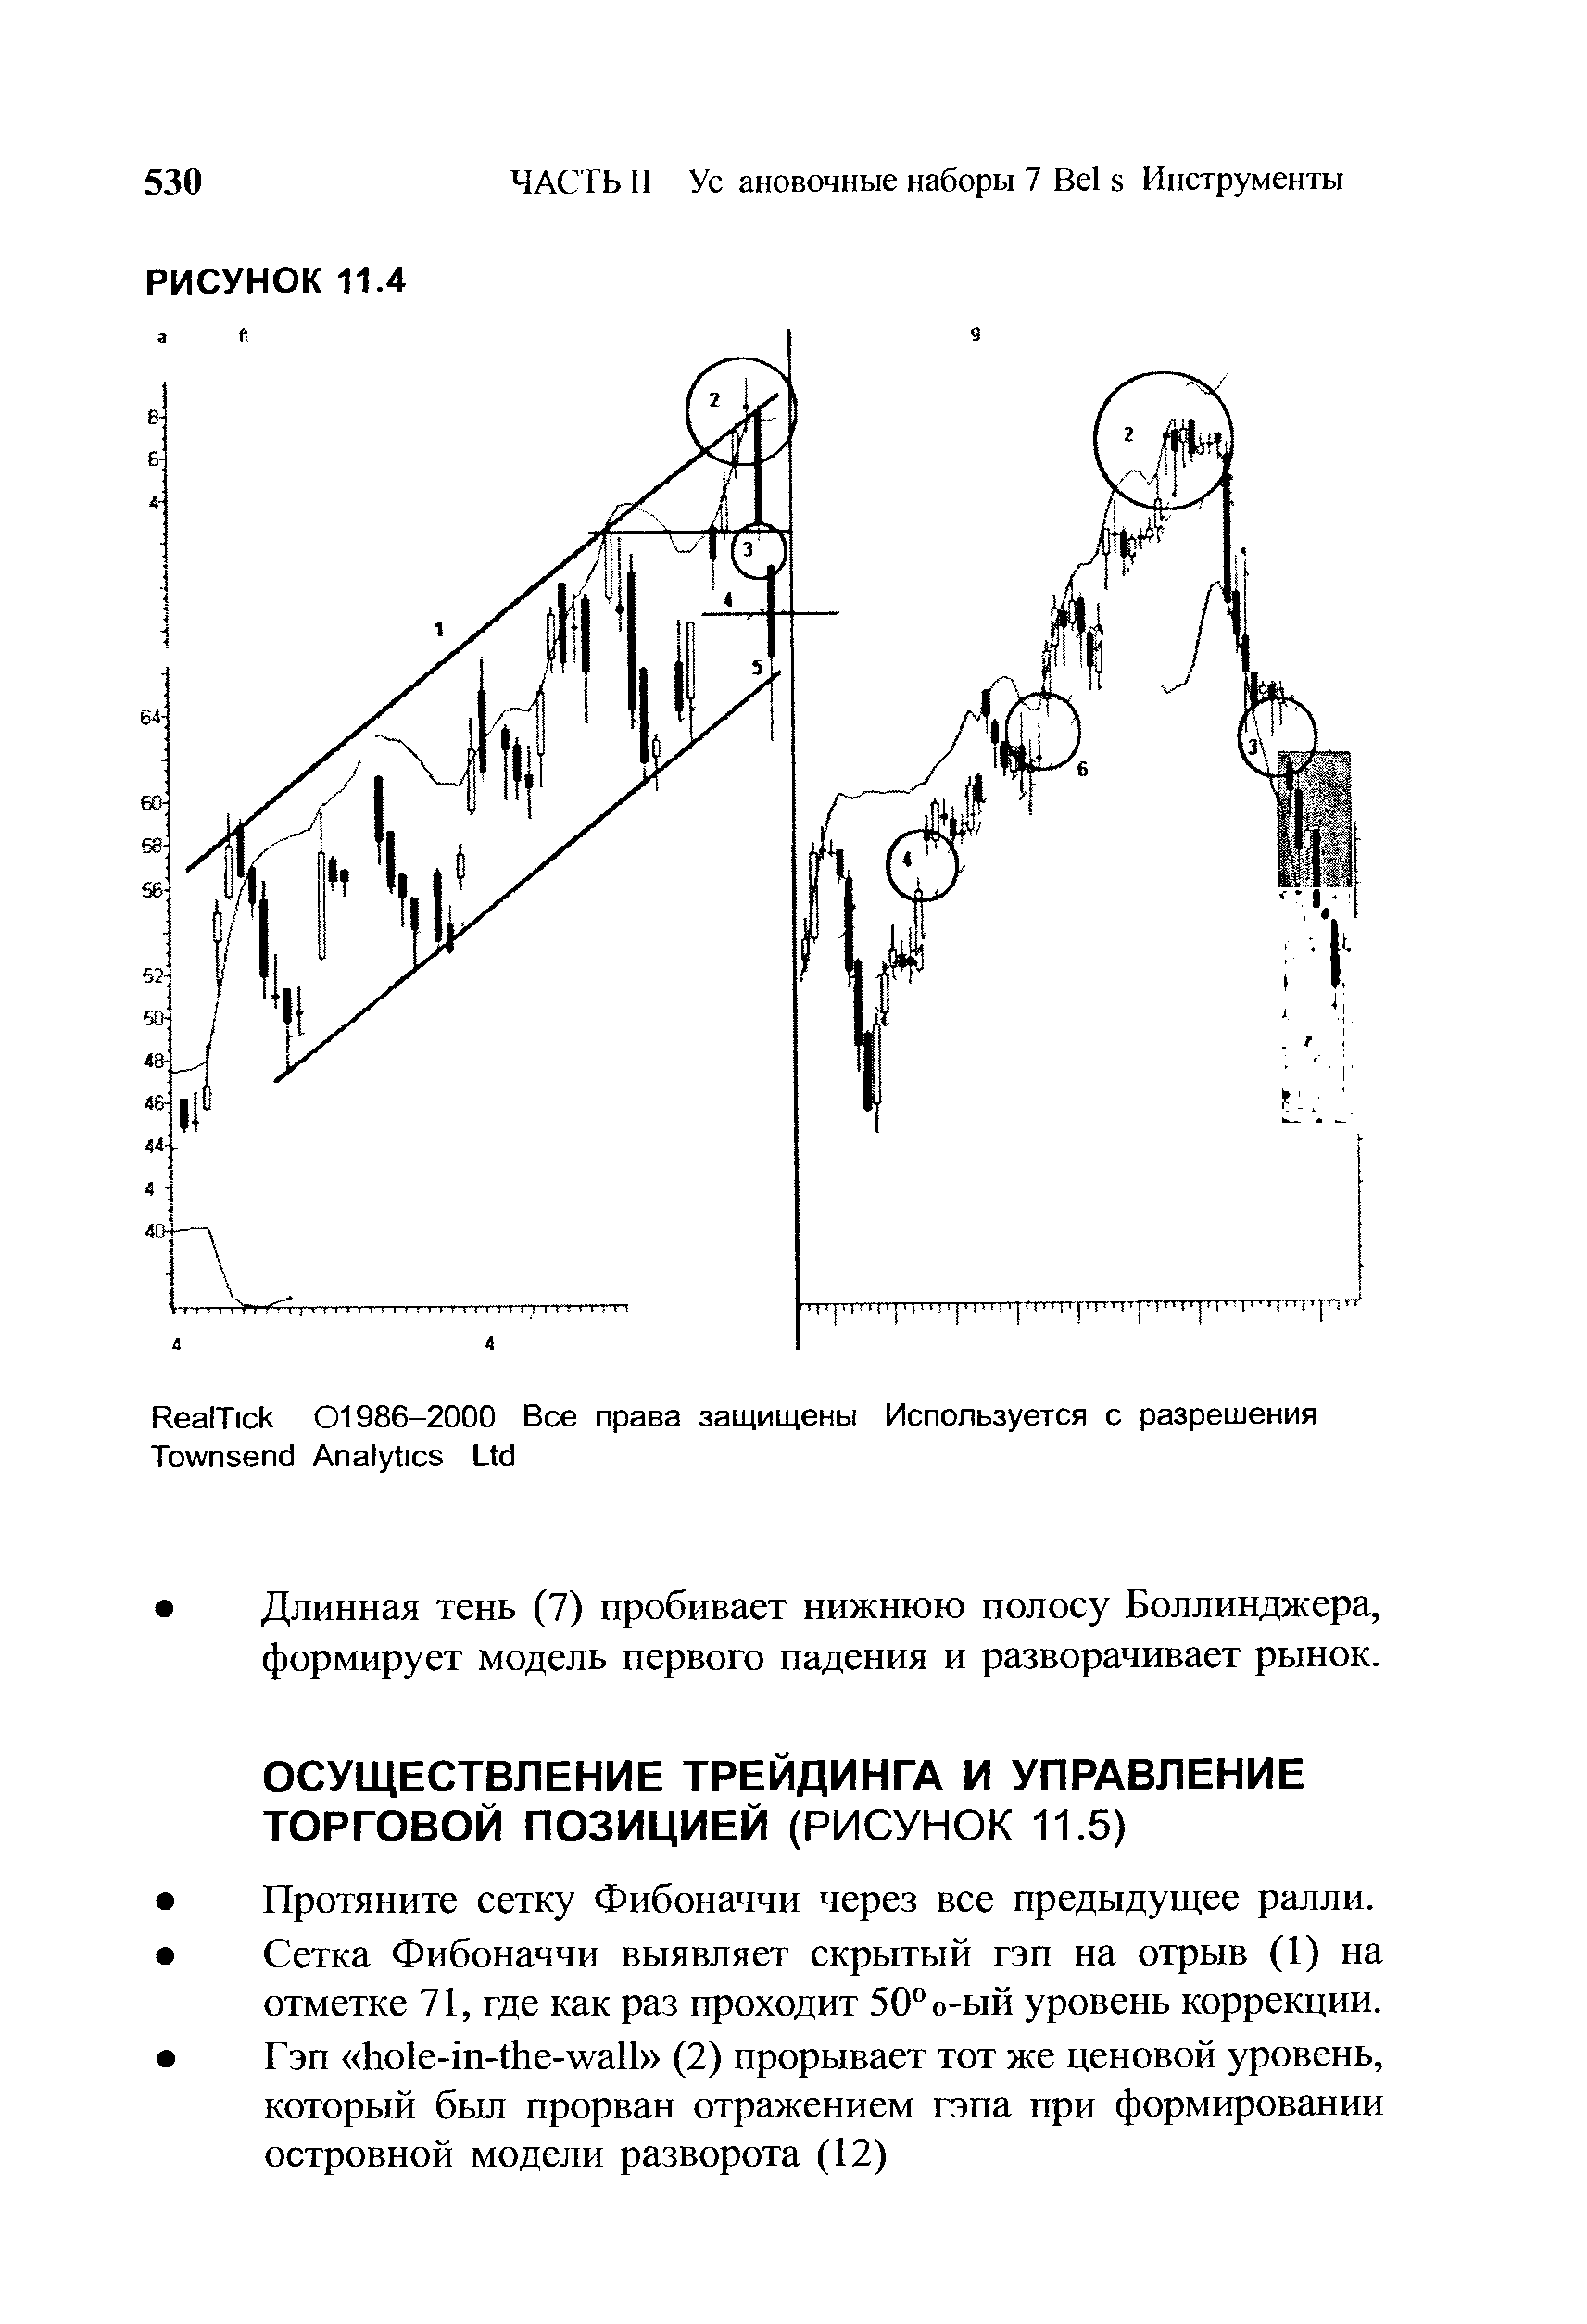 Длинная тень (7) пробивает нижнюю полосу Боллинджера, формирует модель первого падения и разворачивает рынок.
